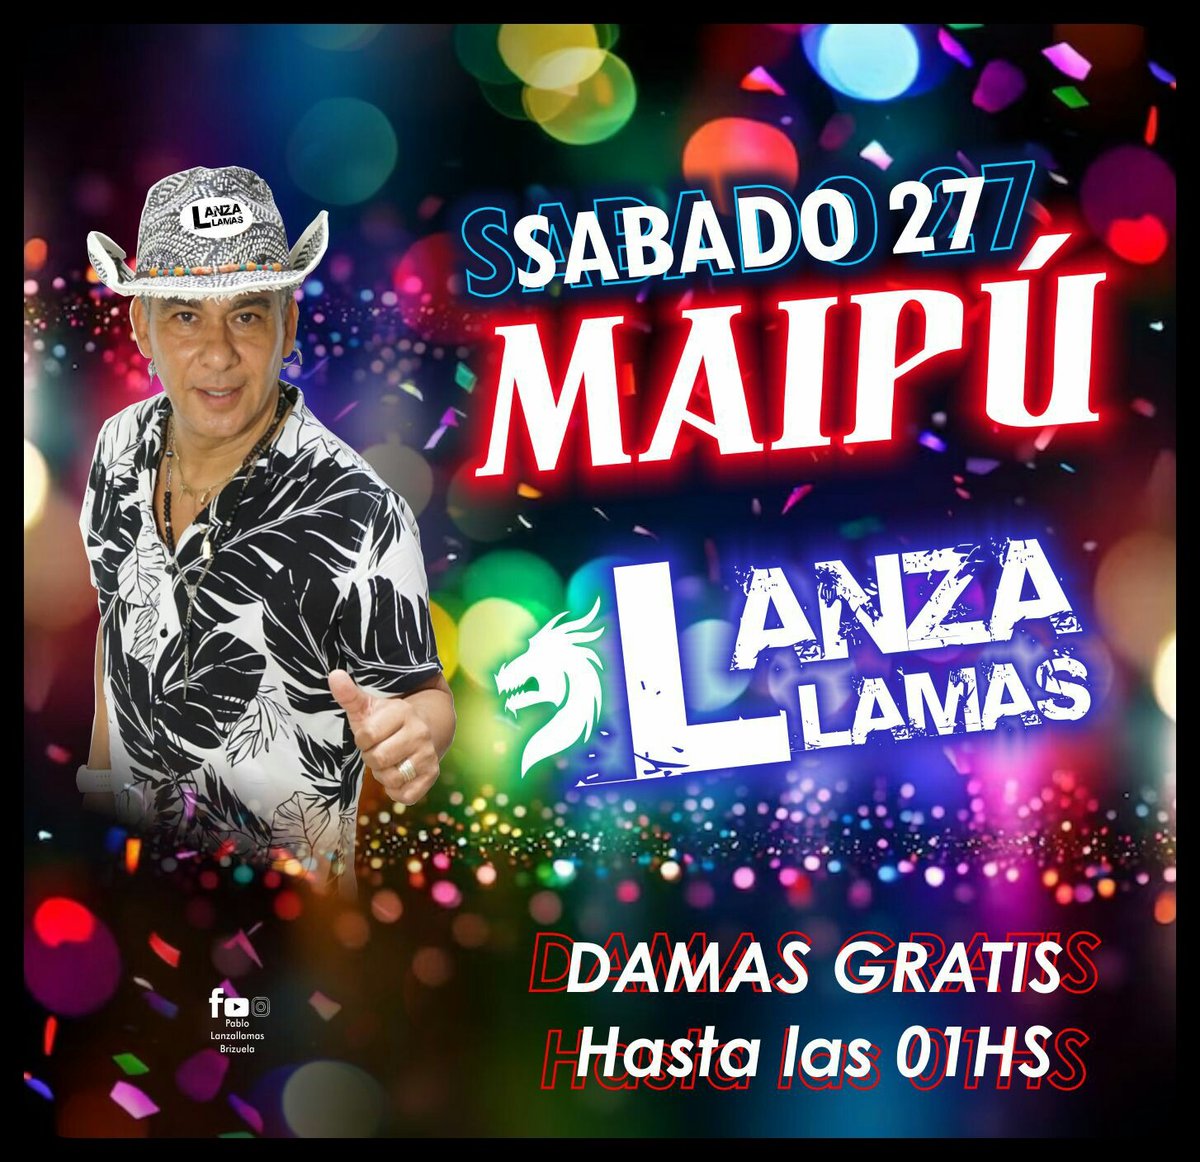 Está noche #LanzallamasBrizuela en el #Maipú 👉Damas gratis hasta las 01 hs #Cuarteto #Córdoba #Argentina